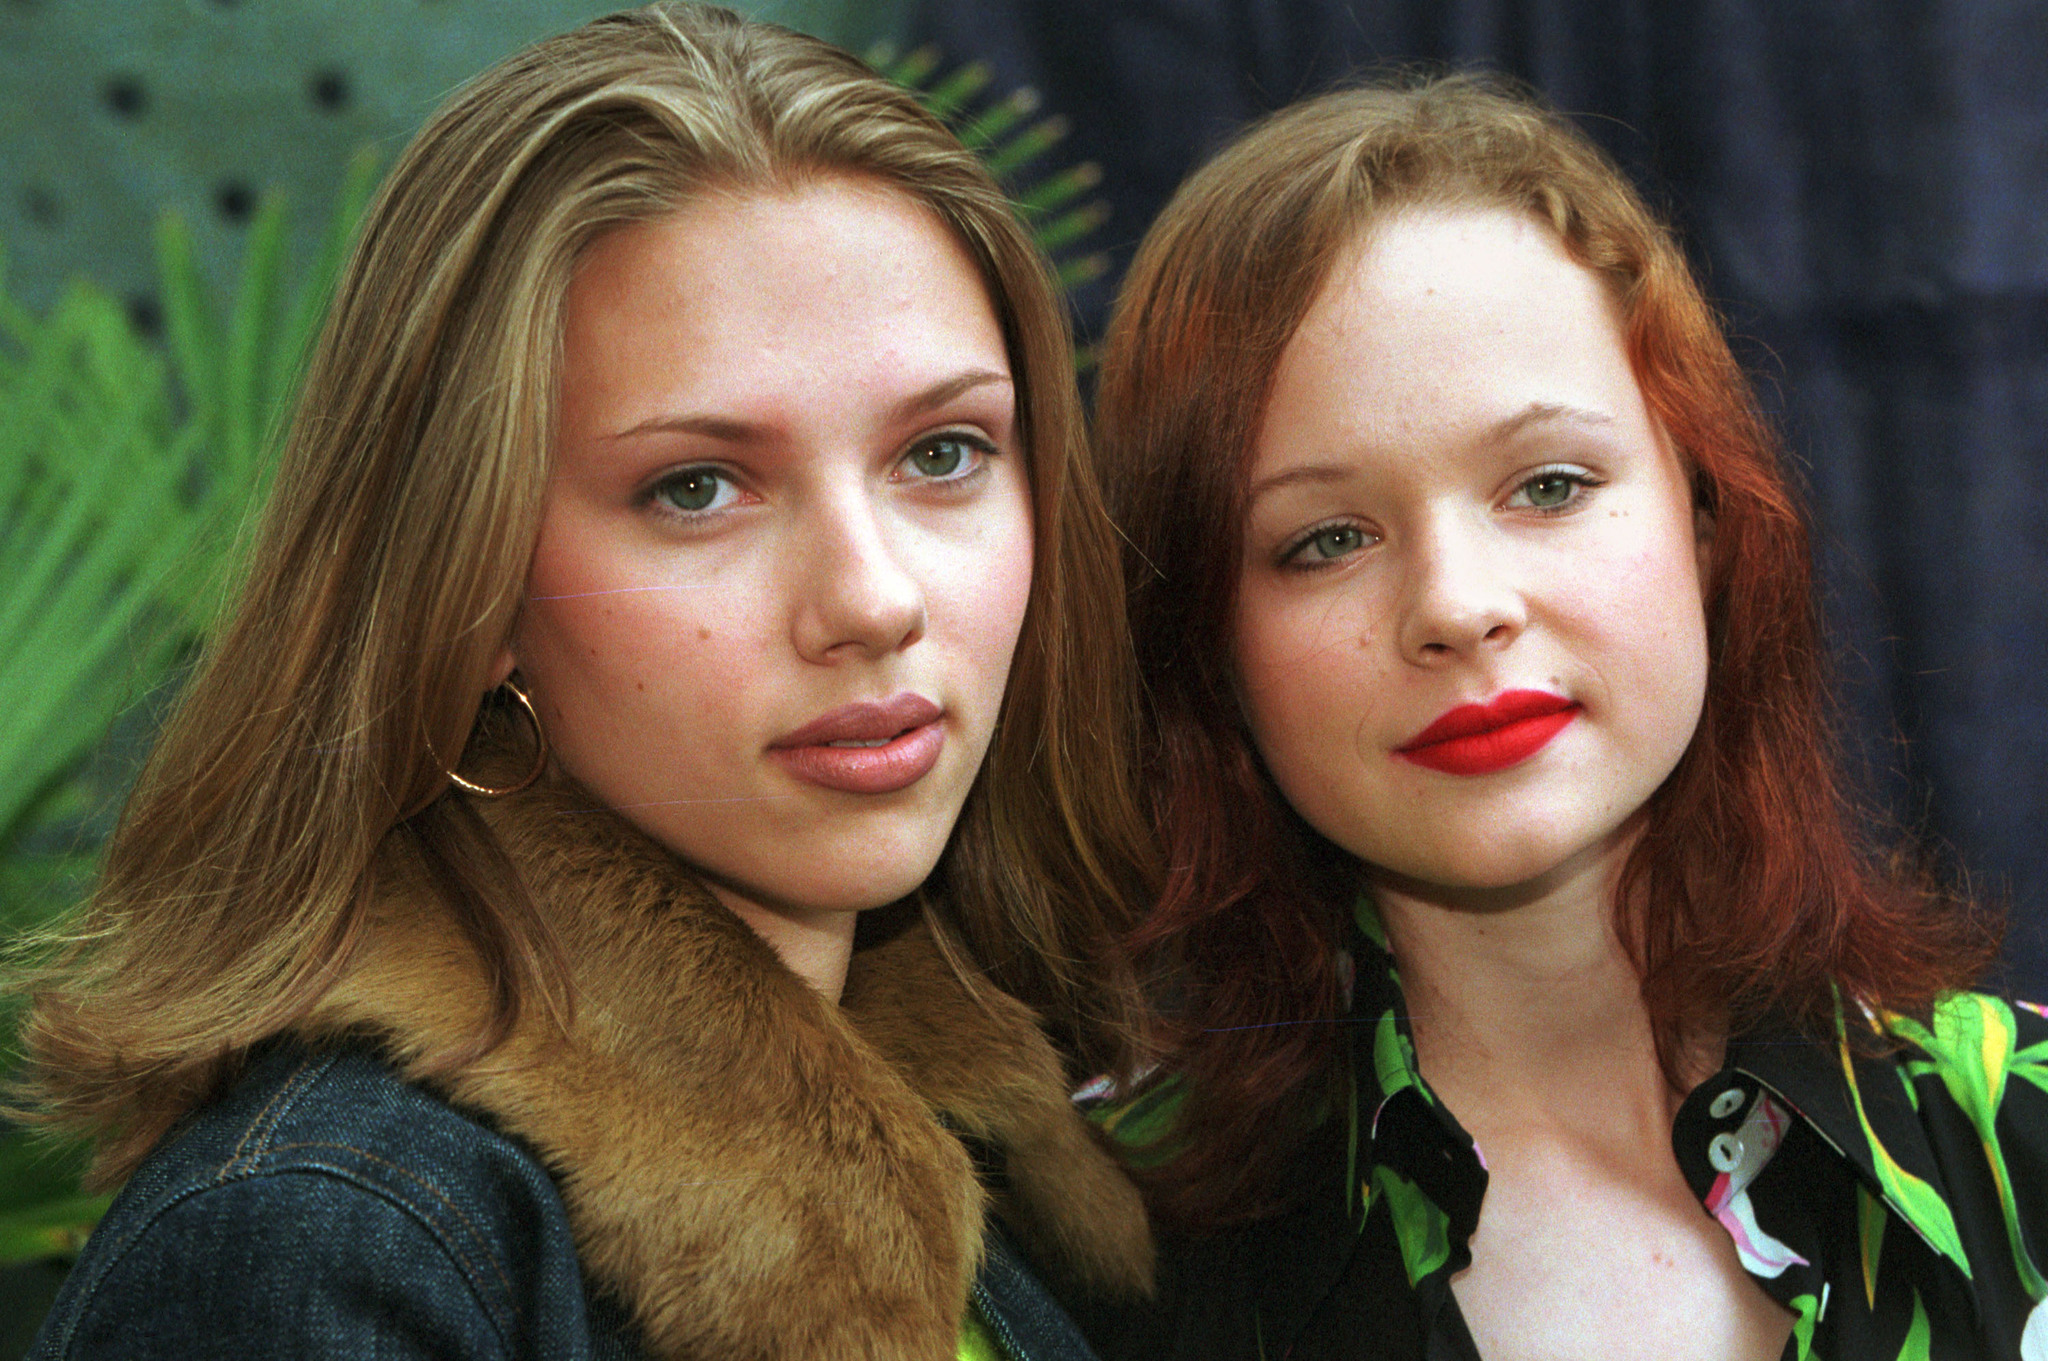 Thora Birch and Scarlett Johansson